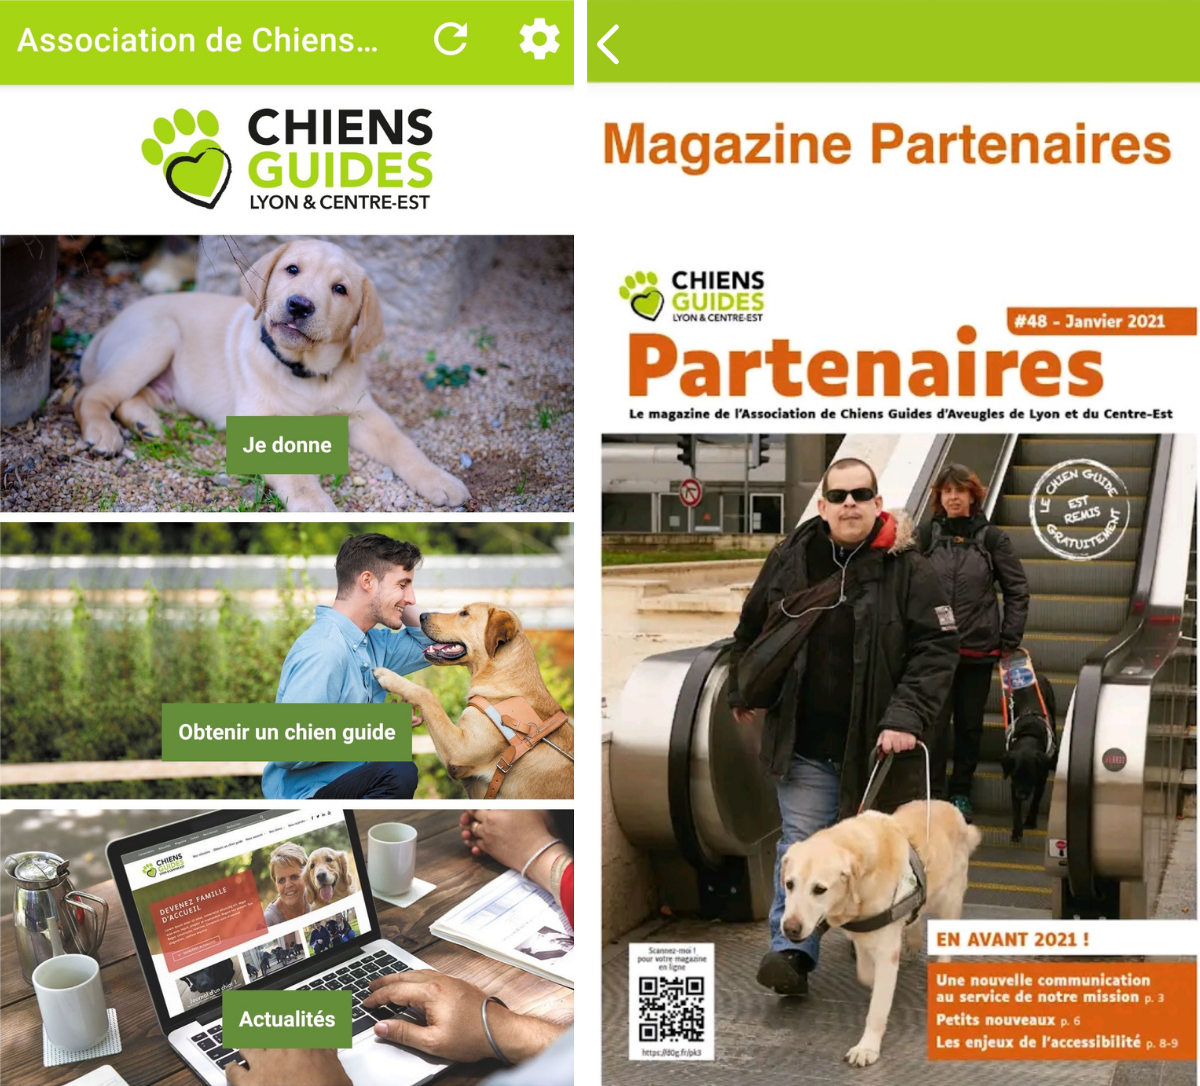 Capture d'écran de l'application Chiens Guides avec différentes rubriques ainsi qu'une page de couverture du magazine Partenaires